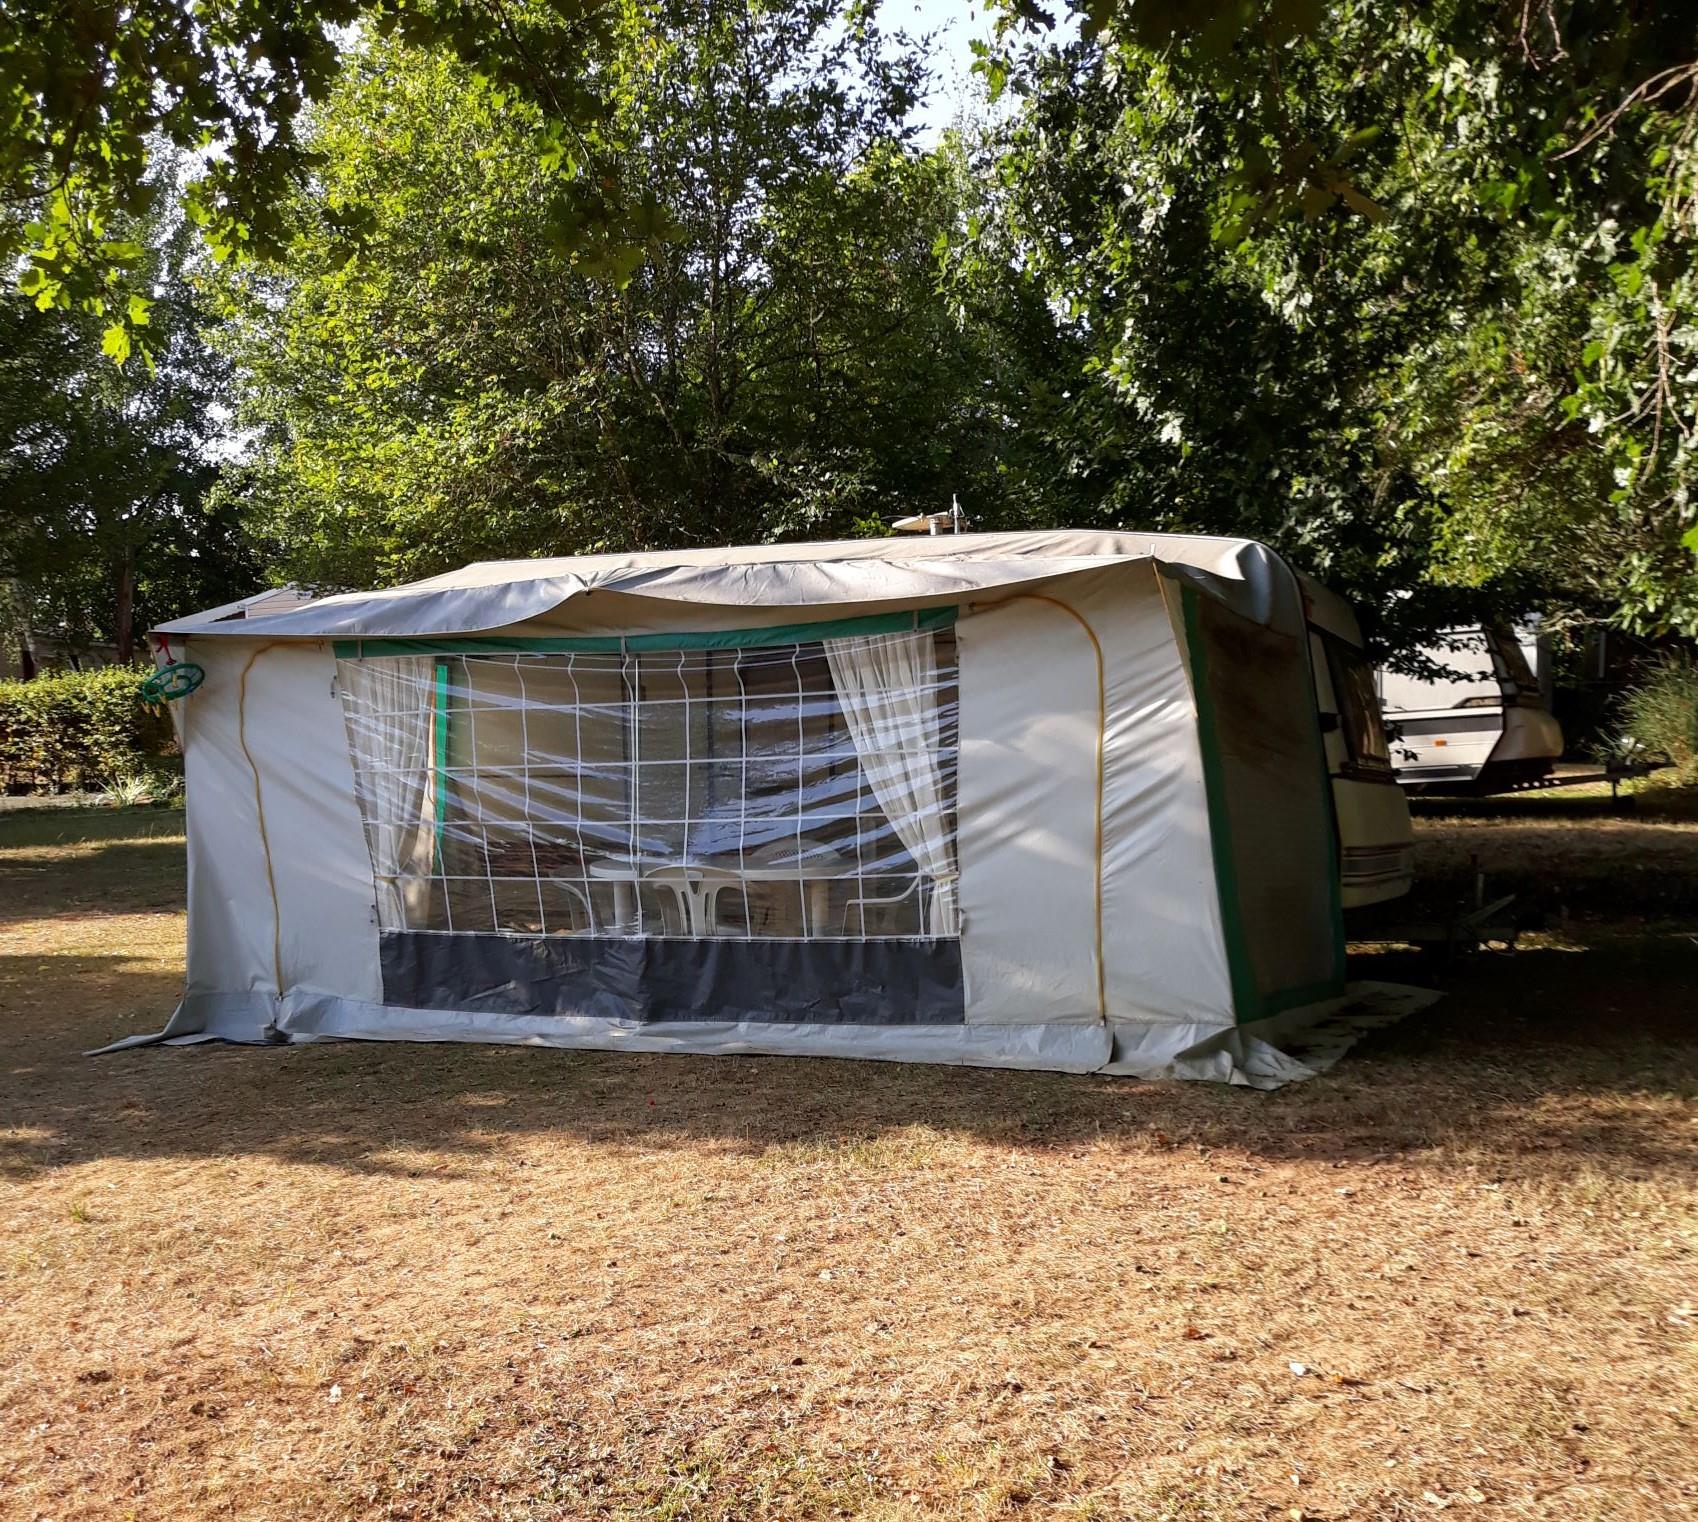 Accommodation - Caravane 4 Places Confort Avec Auvent Cuisine Frigo Vaisselles Couvertures - Camping Le Convivial